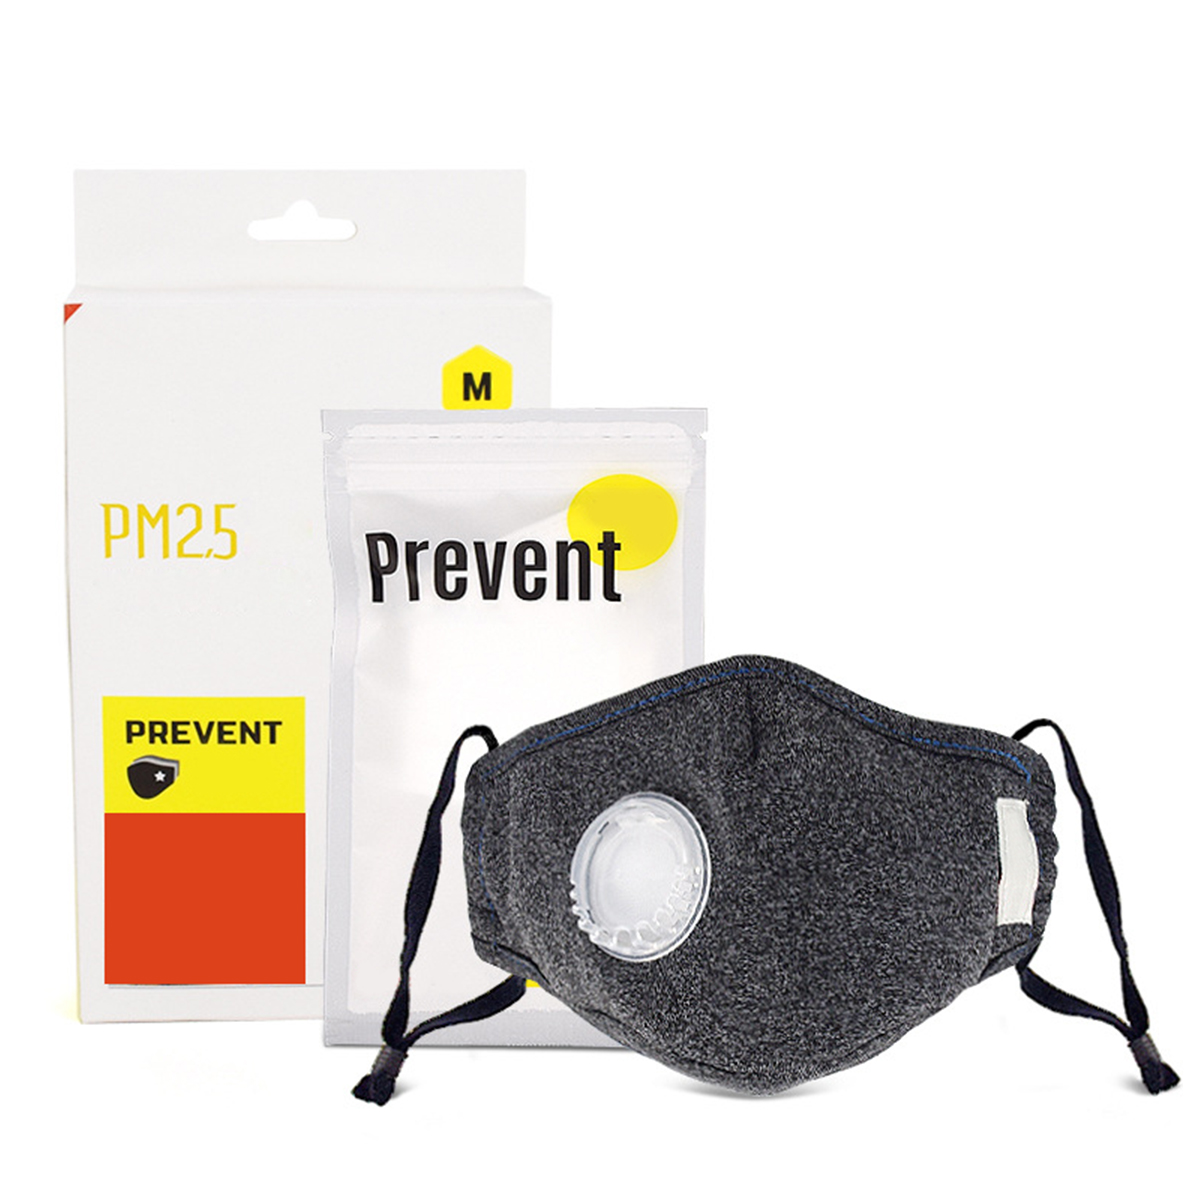 

PM2.5 Хлопок для лица для детей и взрослых Маска с 5 фильтрами Пыленепроницаемый респиратор против помутнения